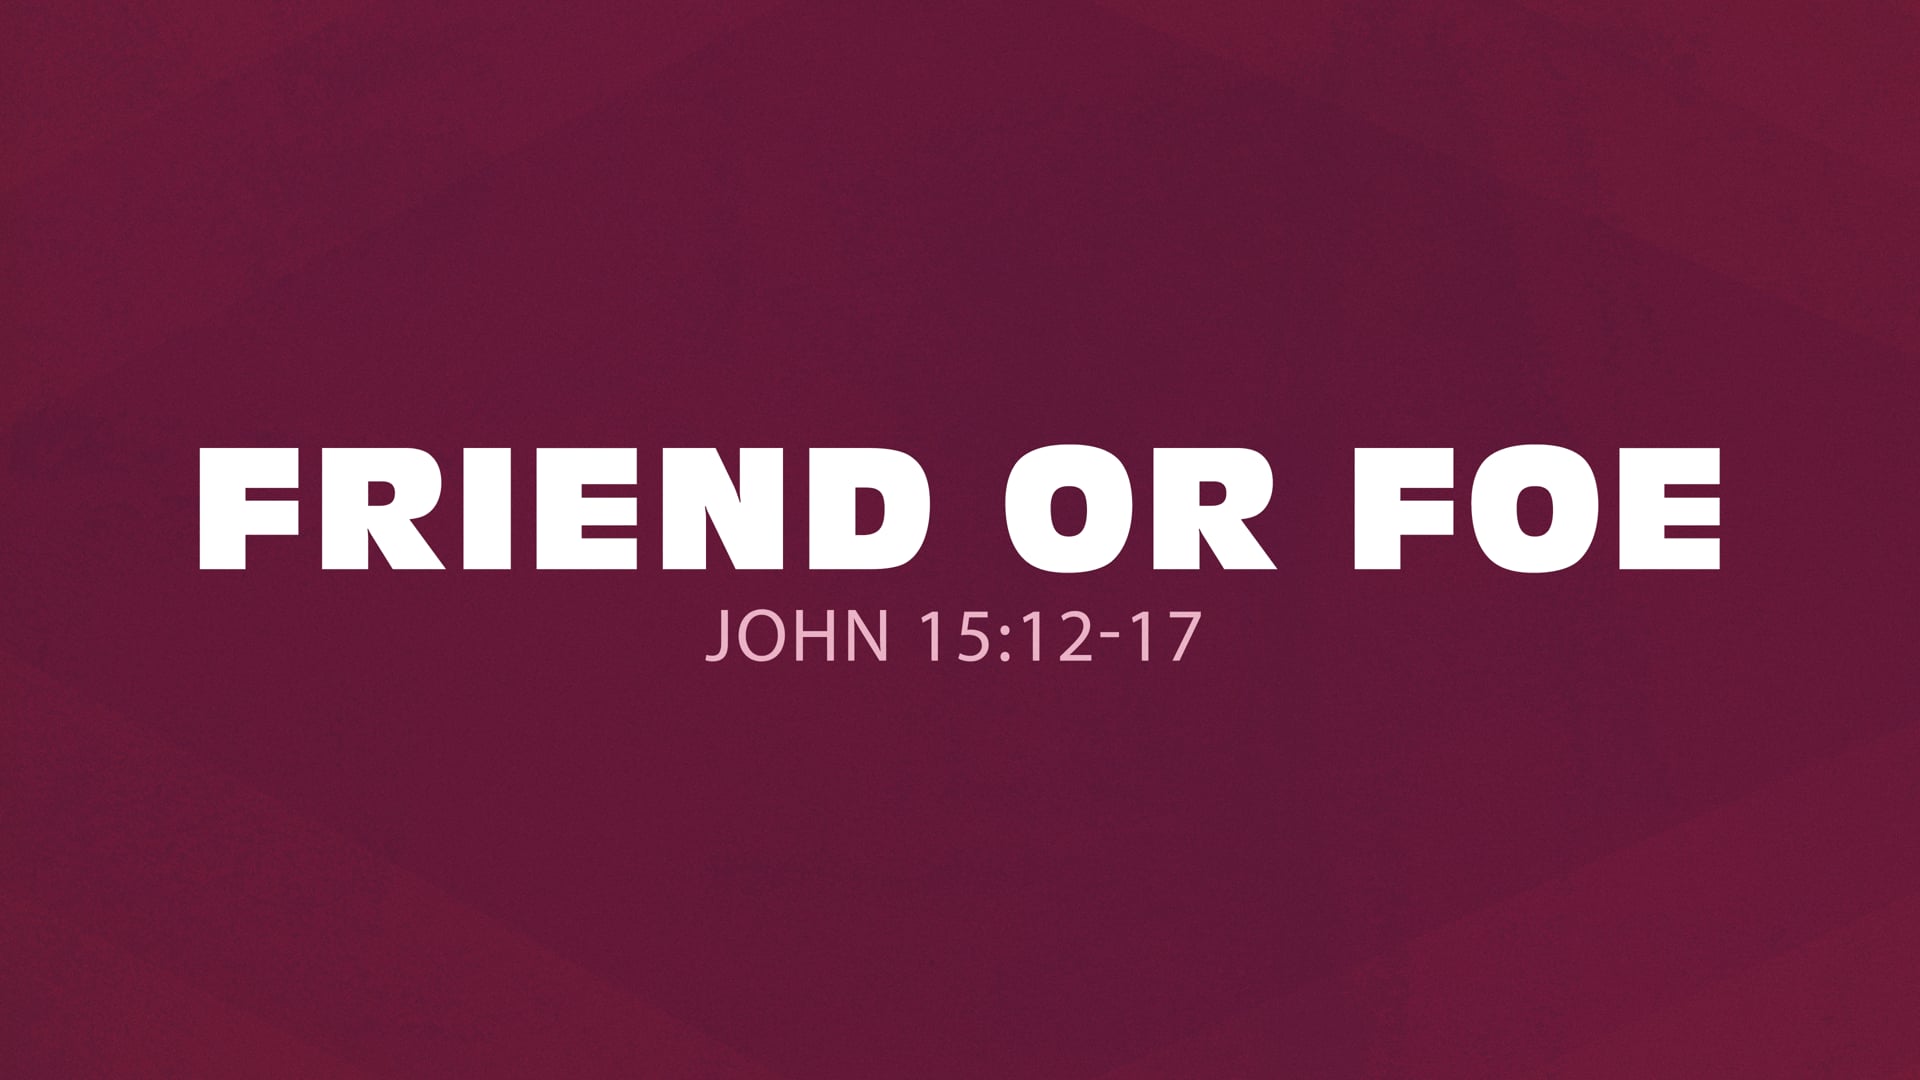 John 15:12-17 (Friend or Foe)